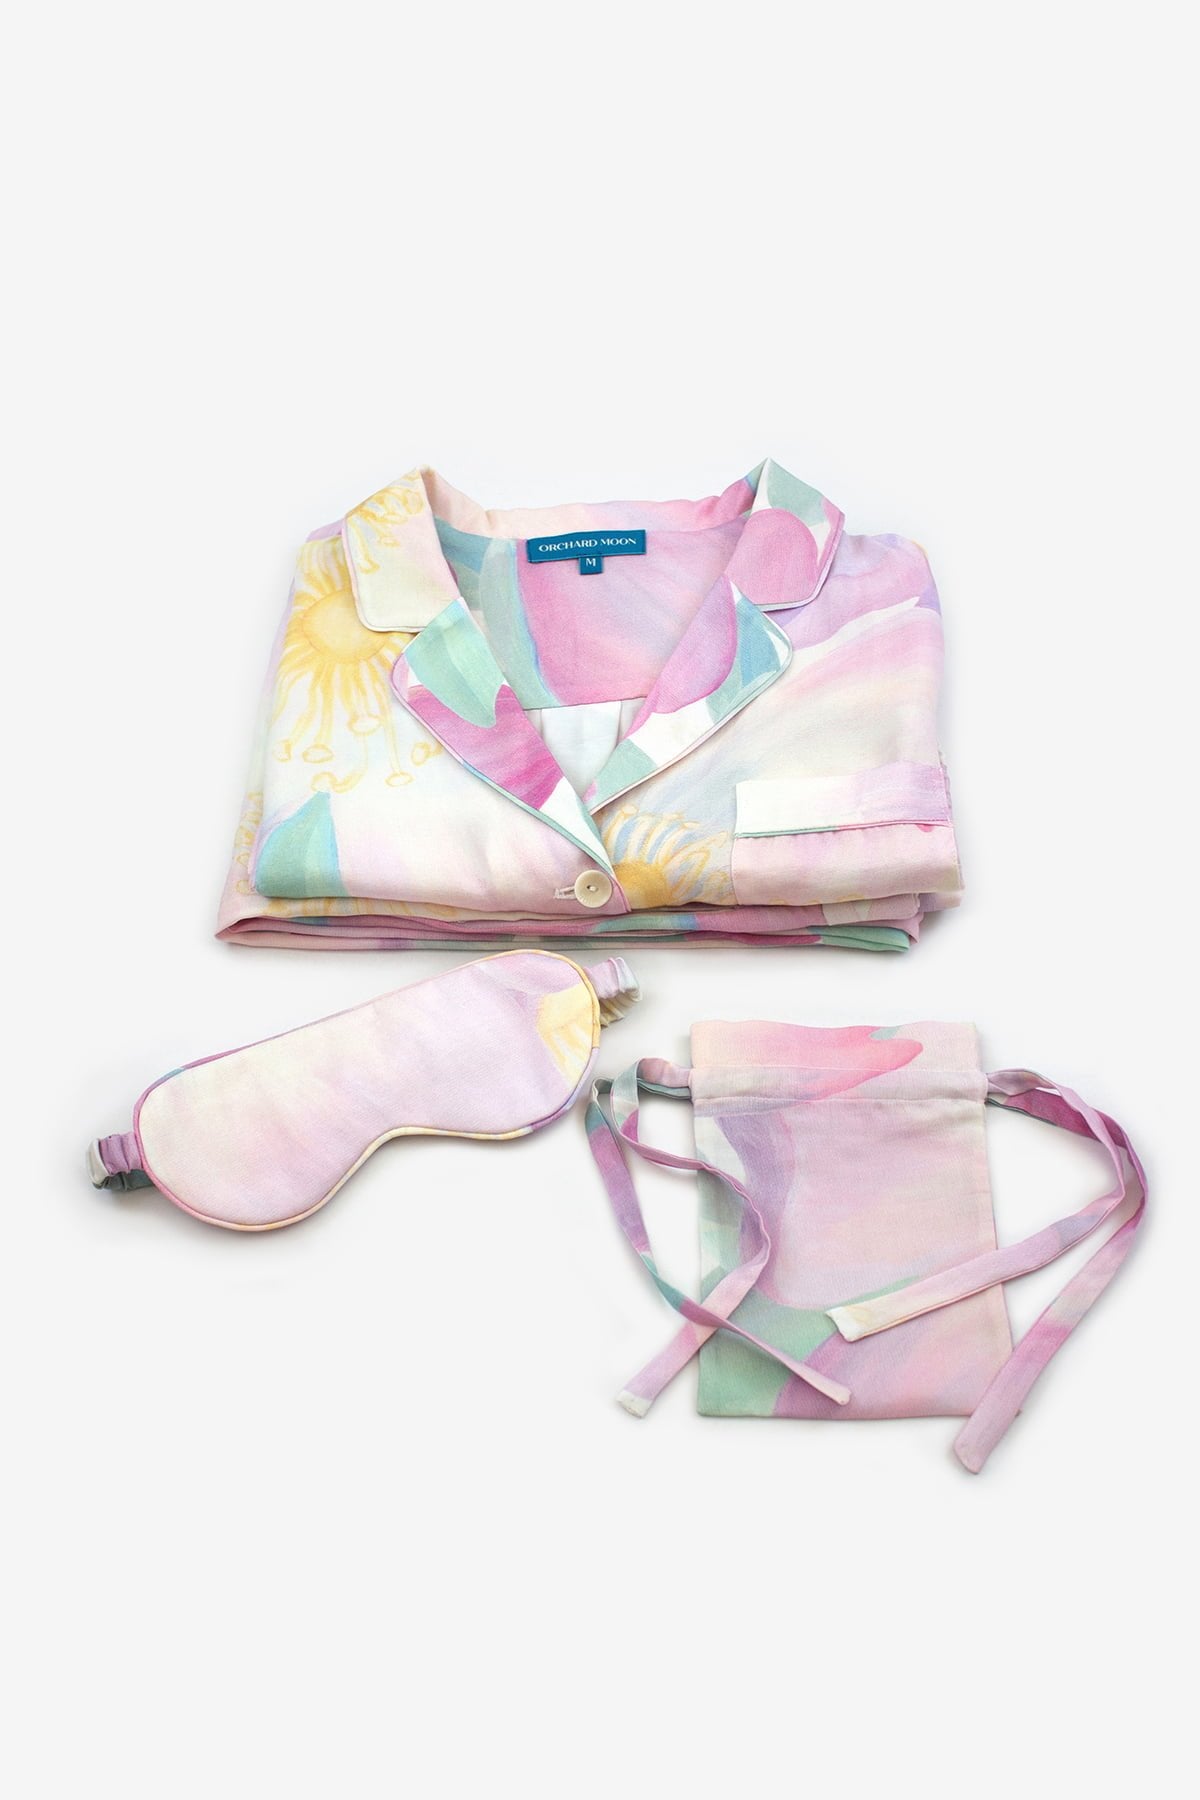 Wild Rose Luxury Pyjama Gift Set - Flatlay - Orchard Moon - Sustainable Luxury Loungewear